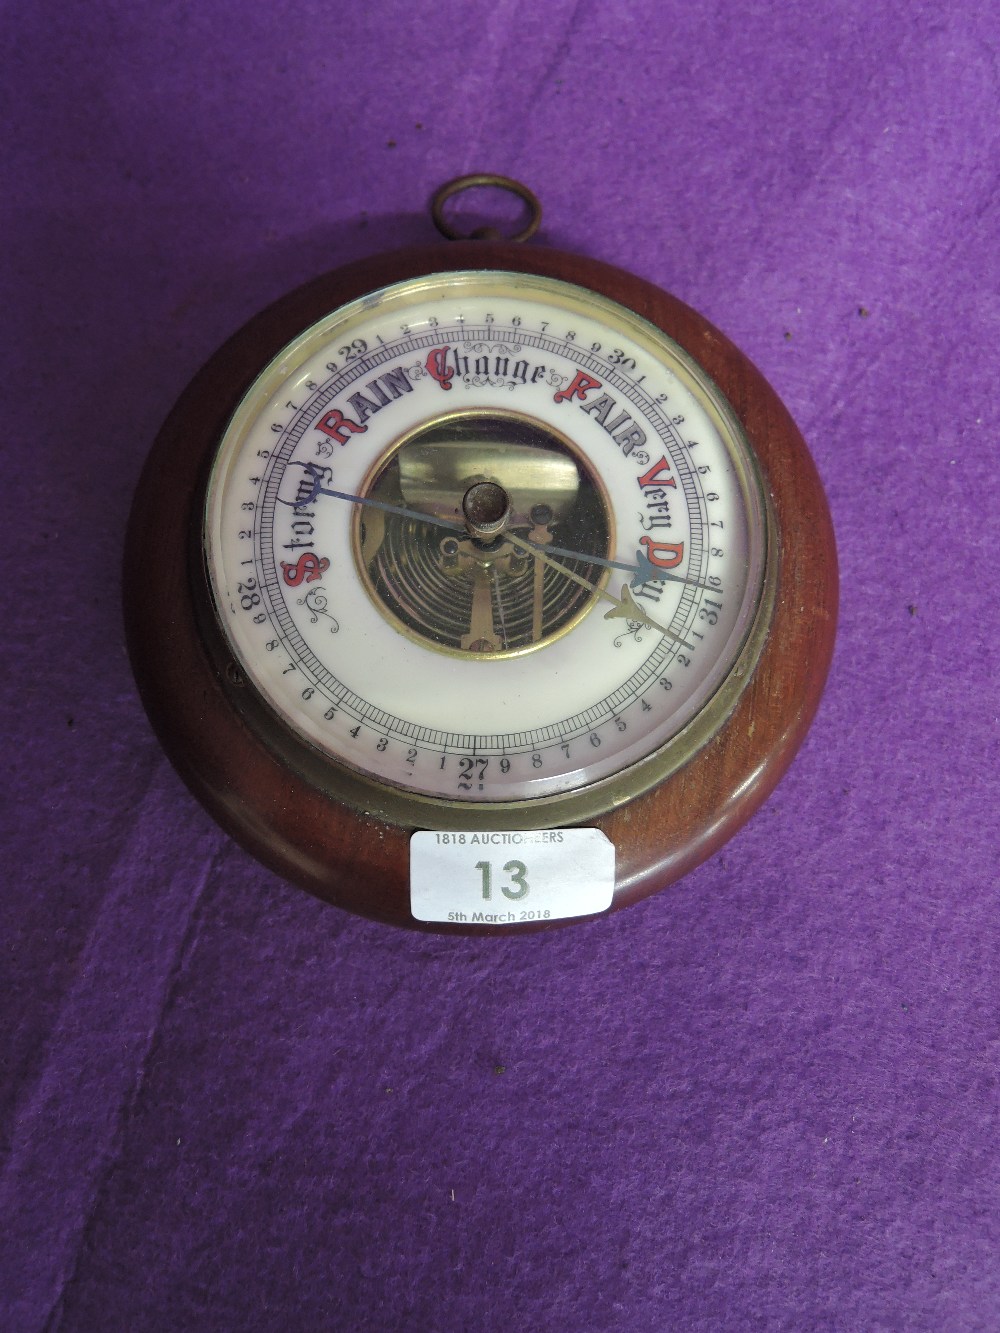 A vintage barometer in bulls eye design and enamel face